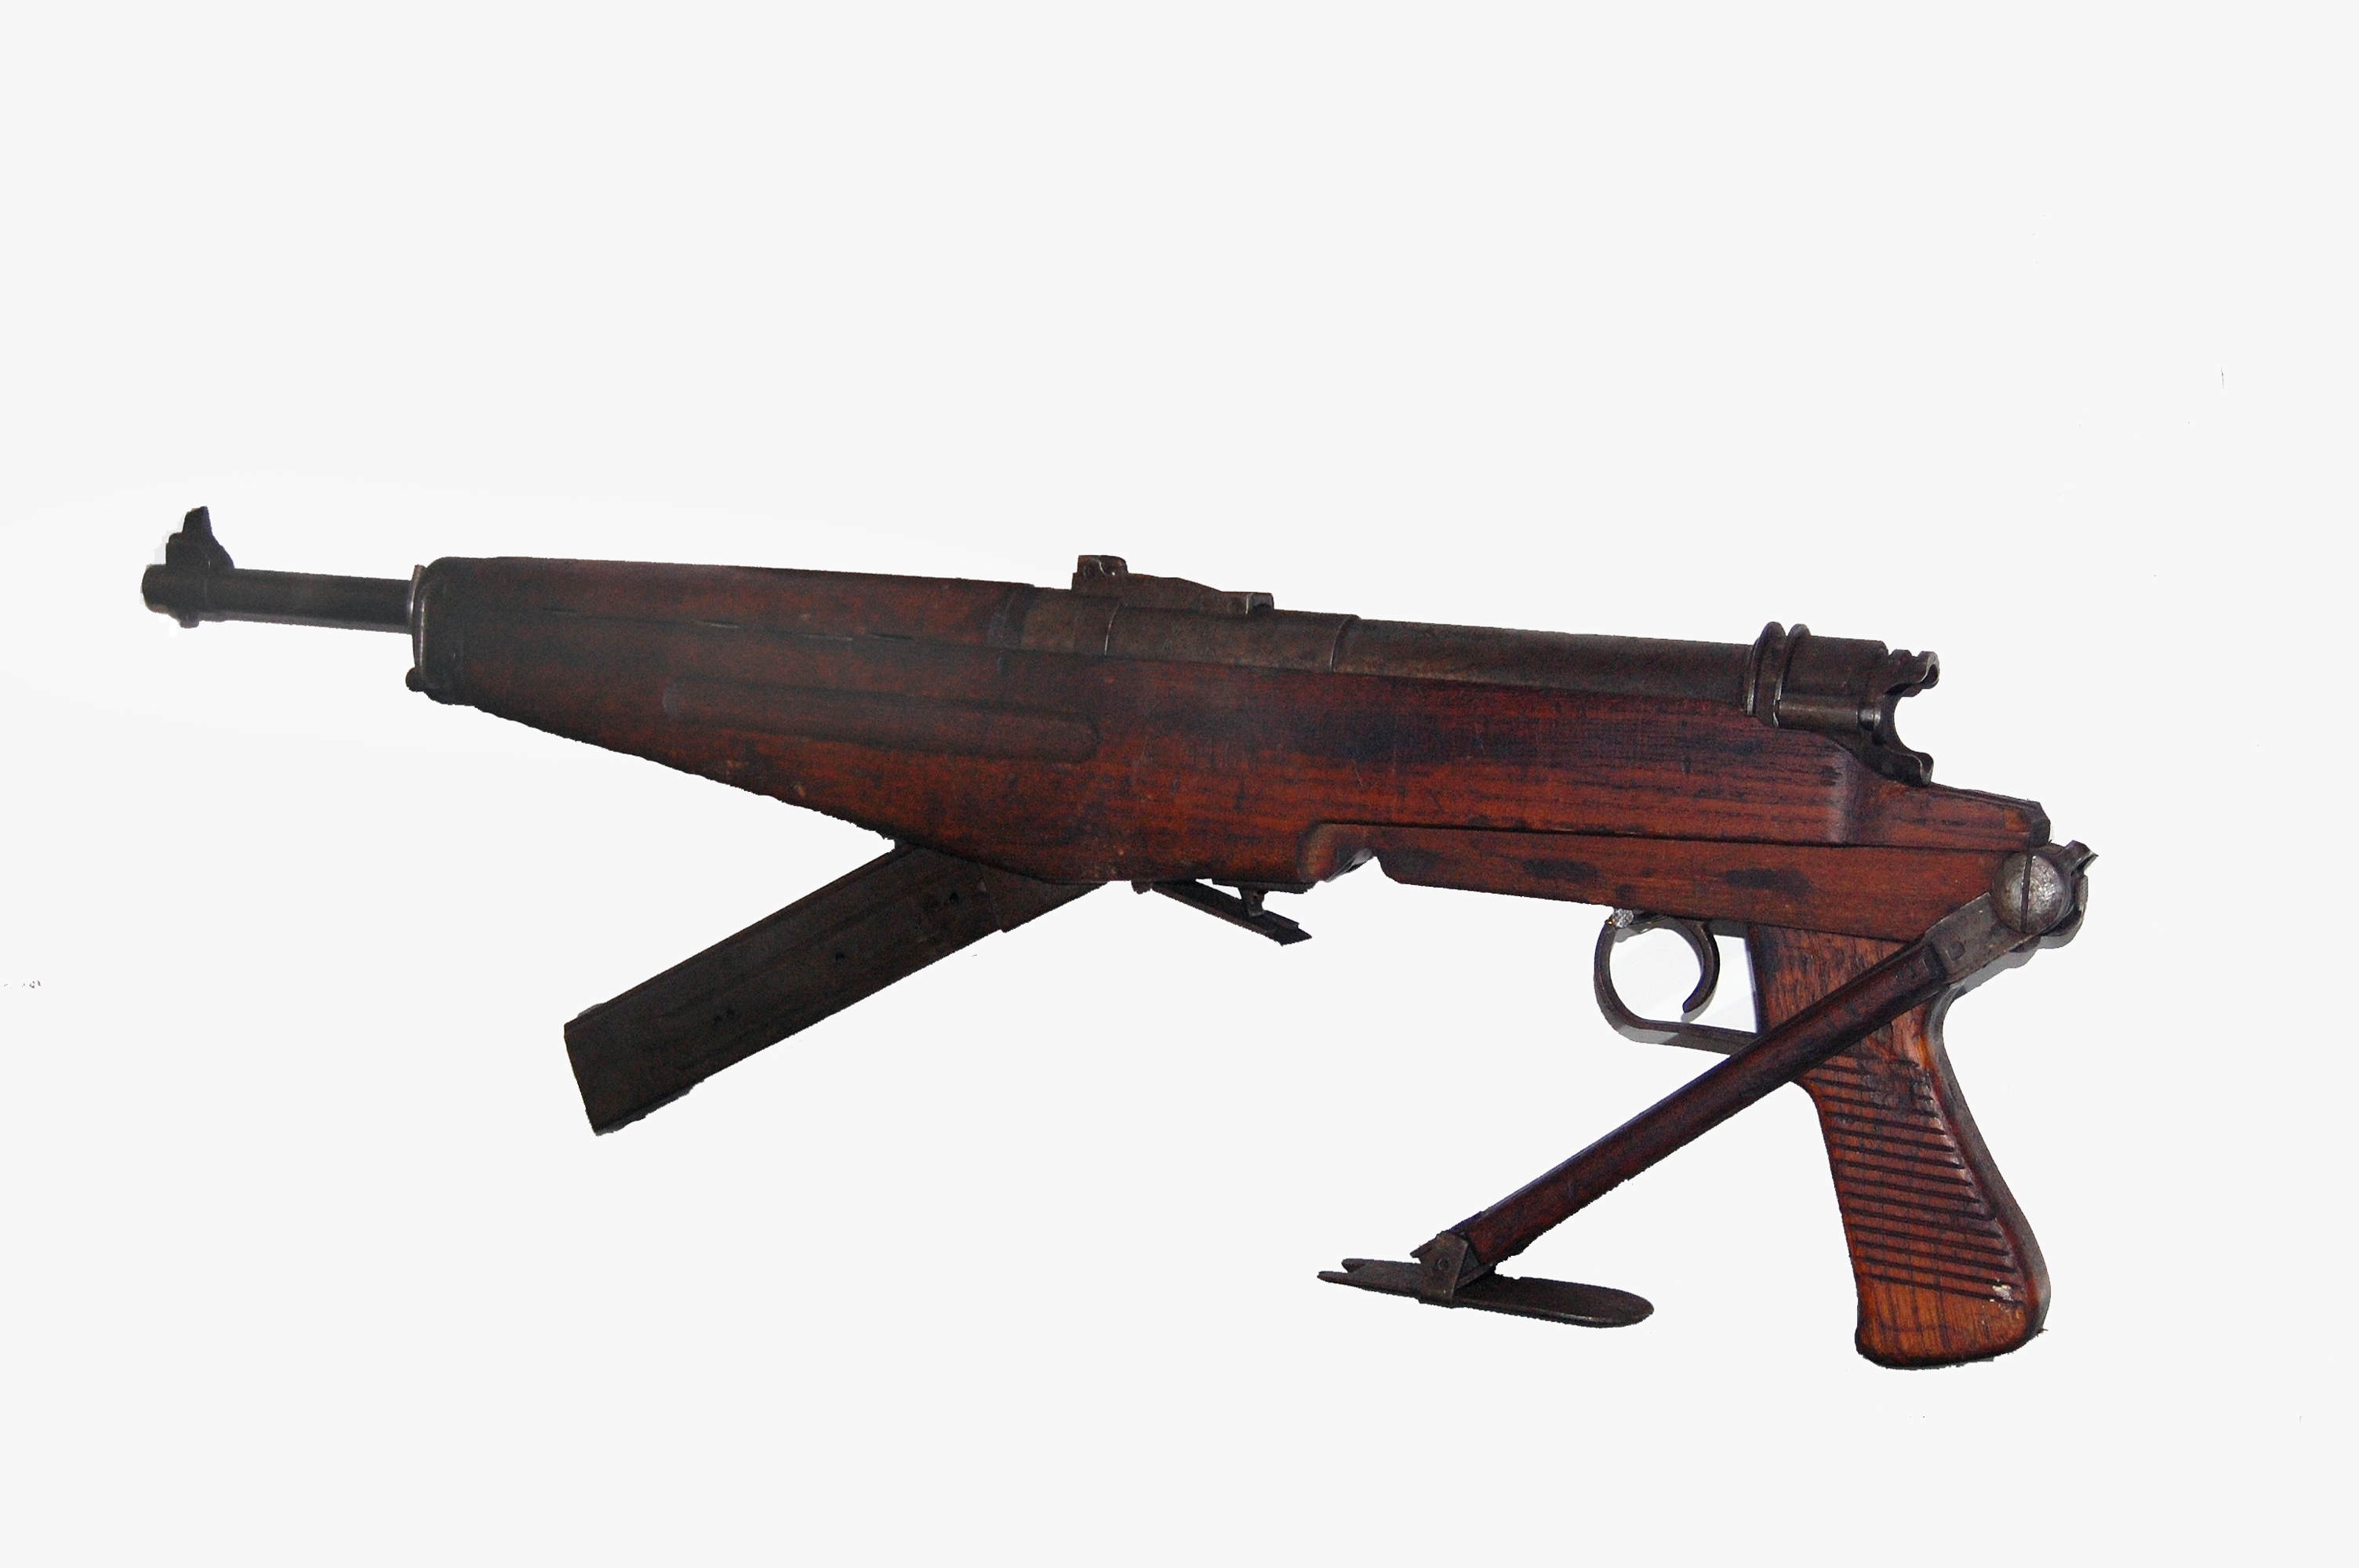 Hungarian_machine_gun_9mm_43M